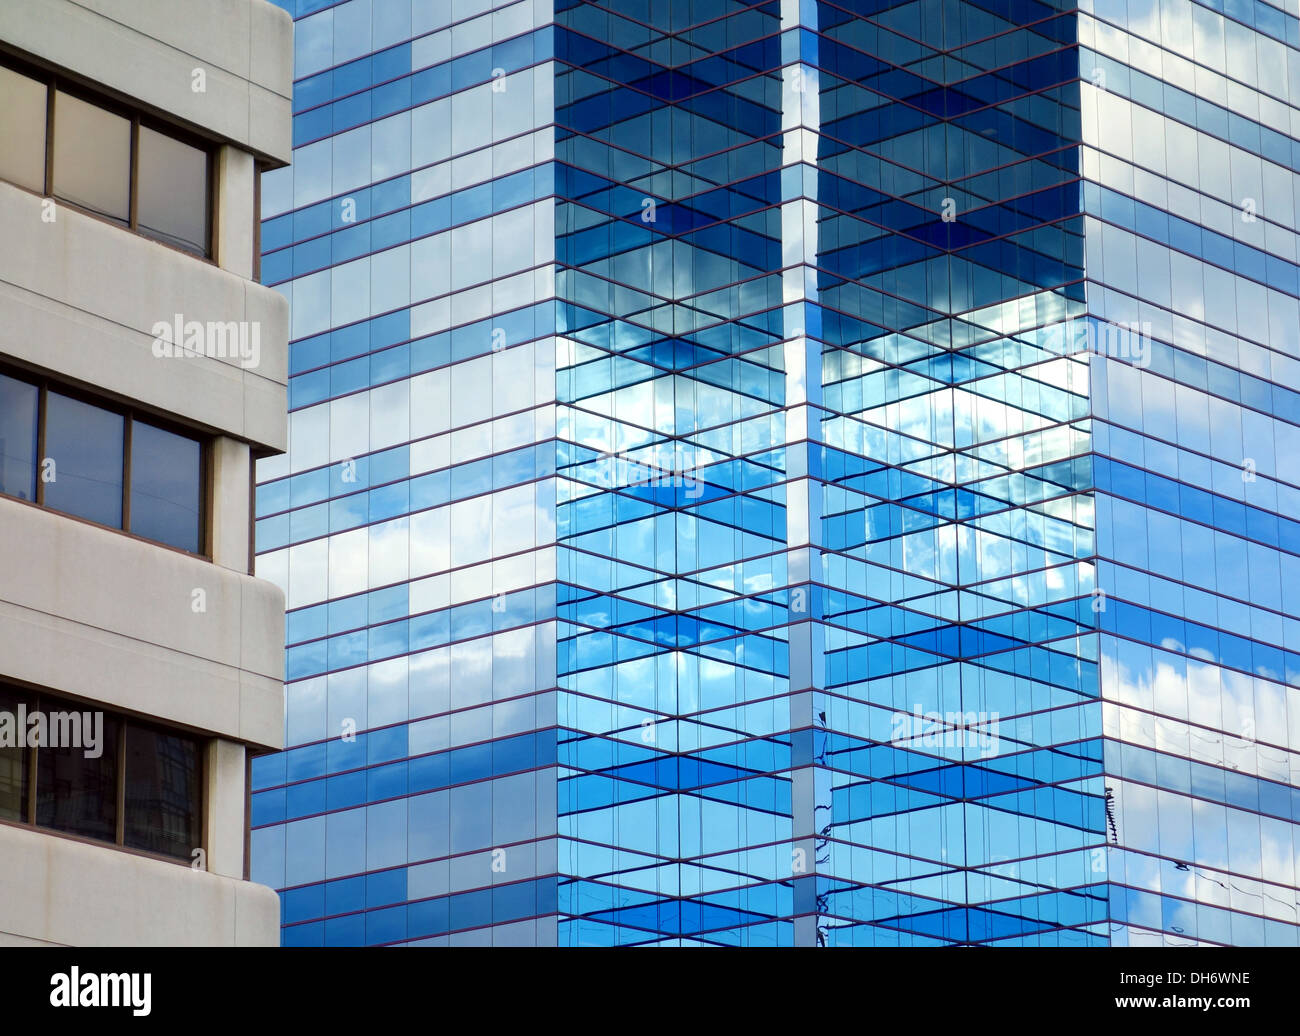 Cielo azul reflejado en una fachada de vidrio en Toronto, Canadá Foto de stock